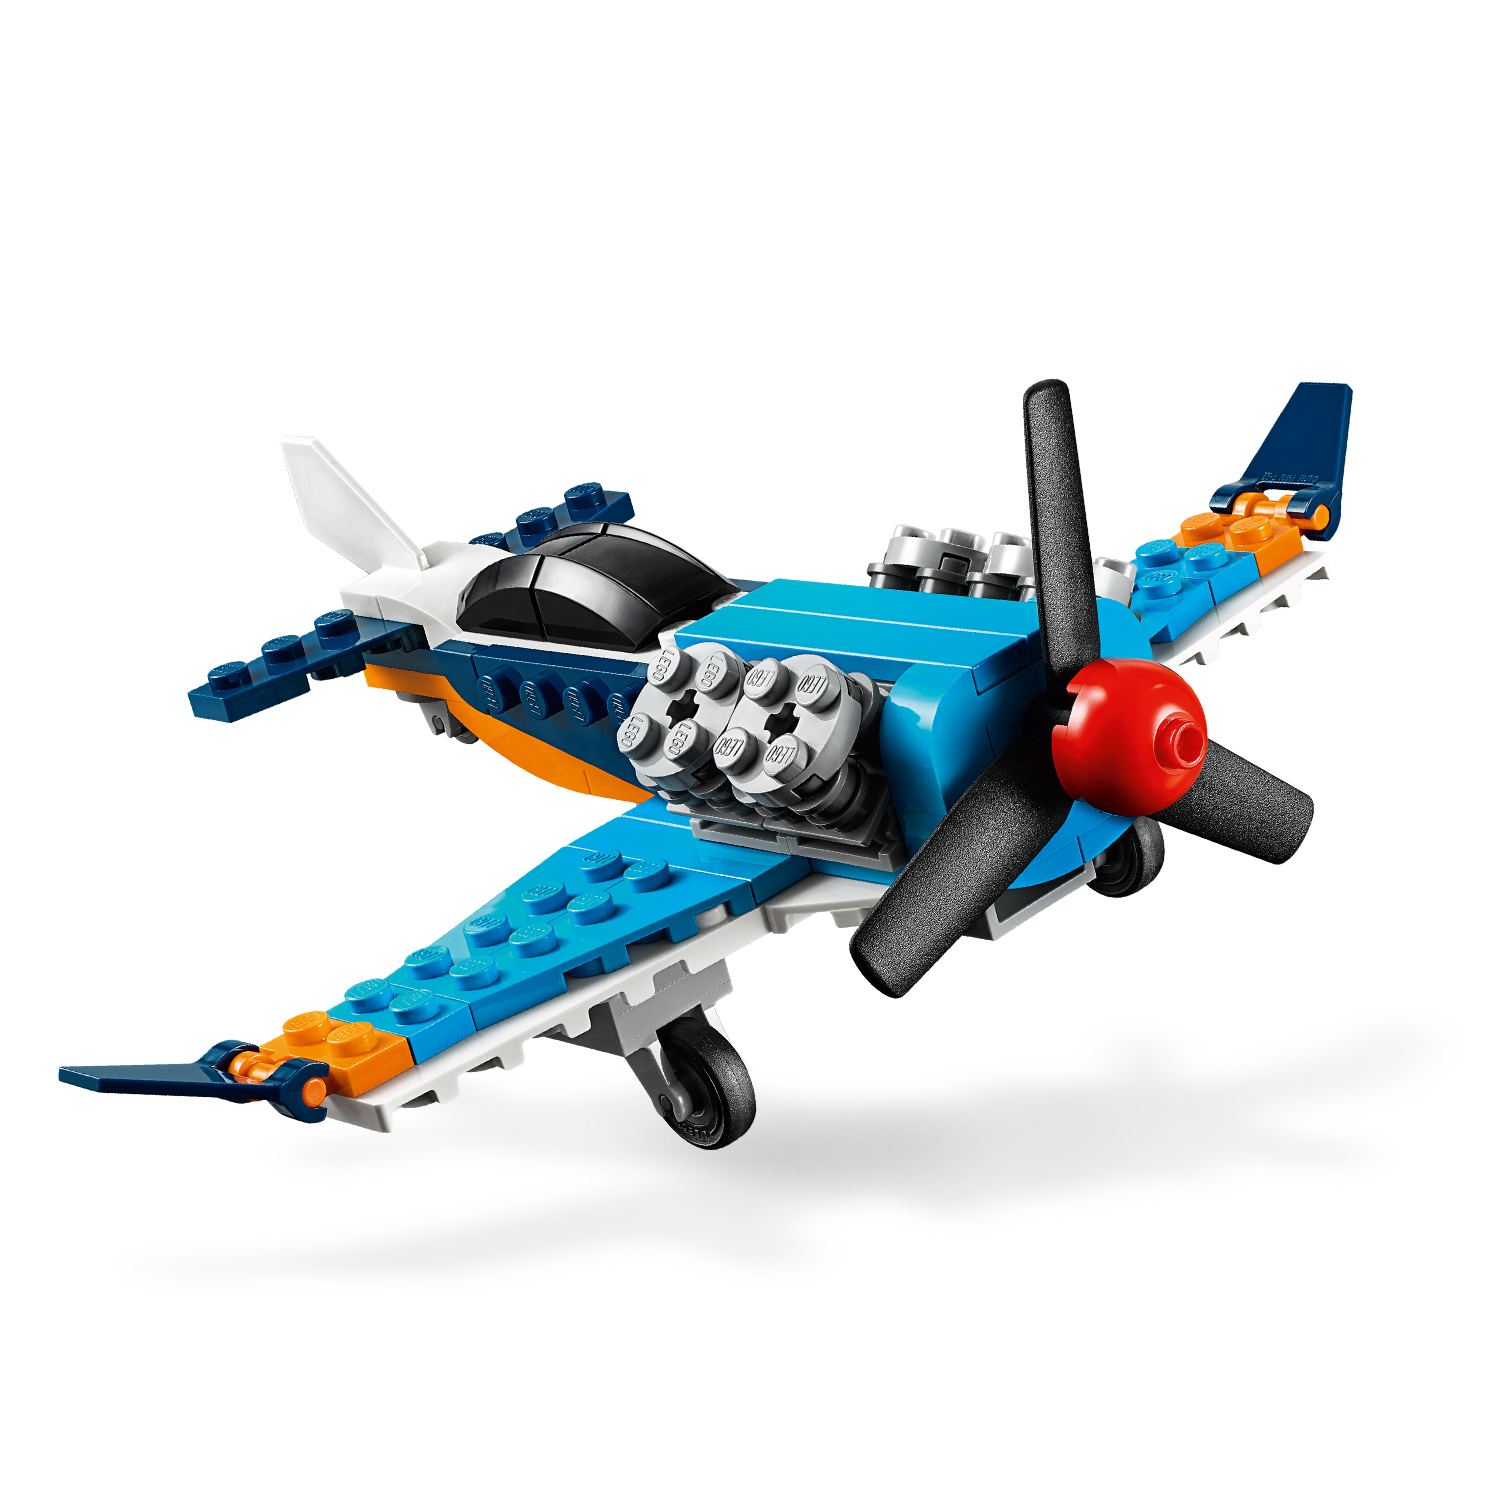 Třikrát více letecké akce s LEGO® kostkami